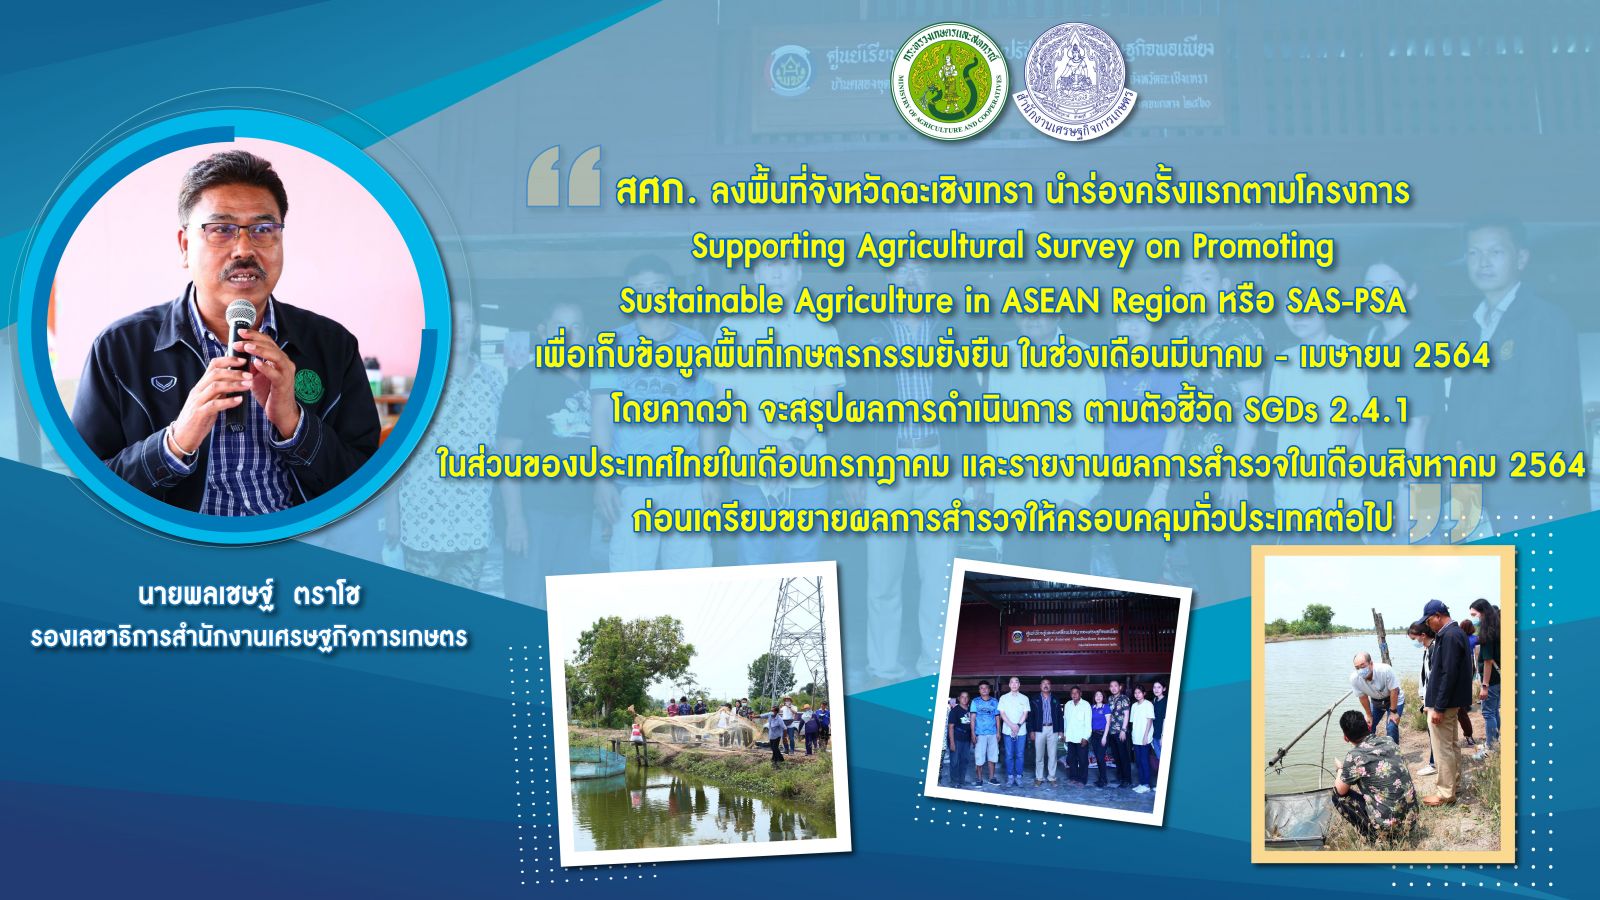 ลุยแล้ว โครงการ SAS-PSA  สศก. นำร่องพื้นที่แห่งแรกของไทย   ปักหมุด ฉะเชิงเทรา 5 อำเภอ สำรวจพื้นที่เกษตรกรรมยั่งยืน เดินหน้าสร้างความมั่นคงอาหารตามเป้า SDGs